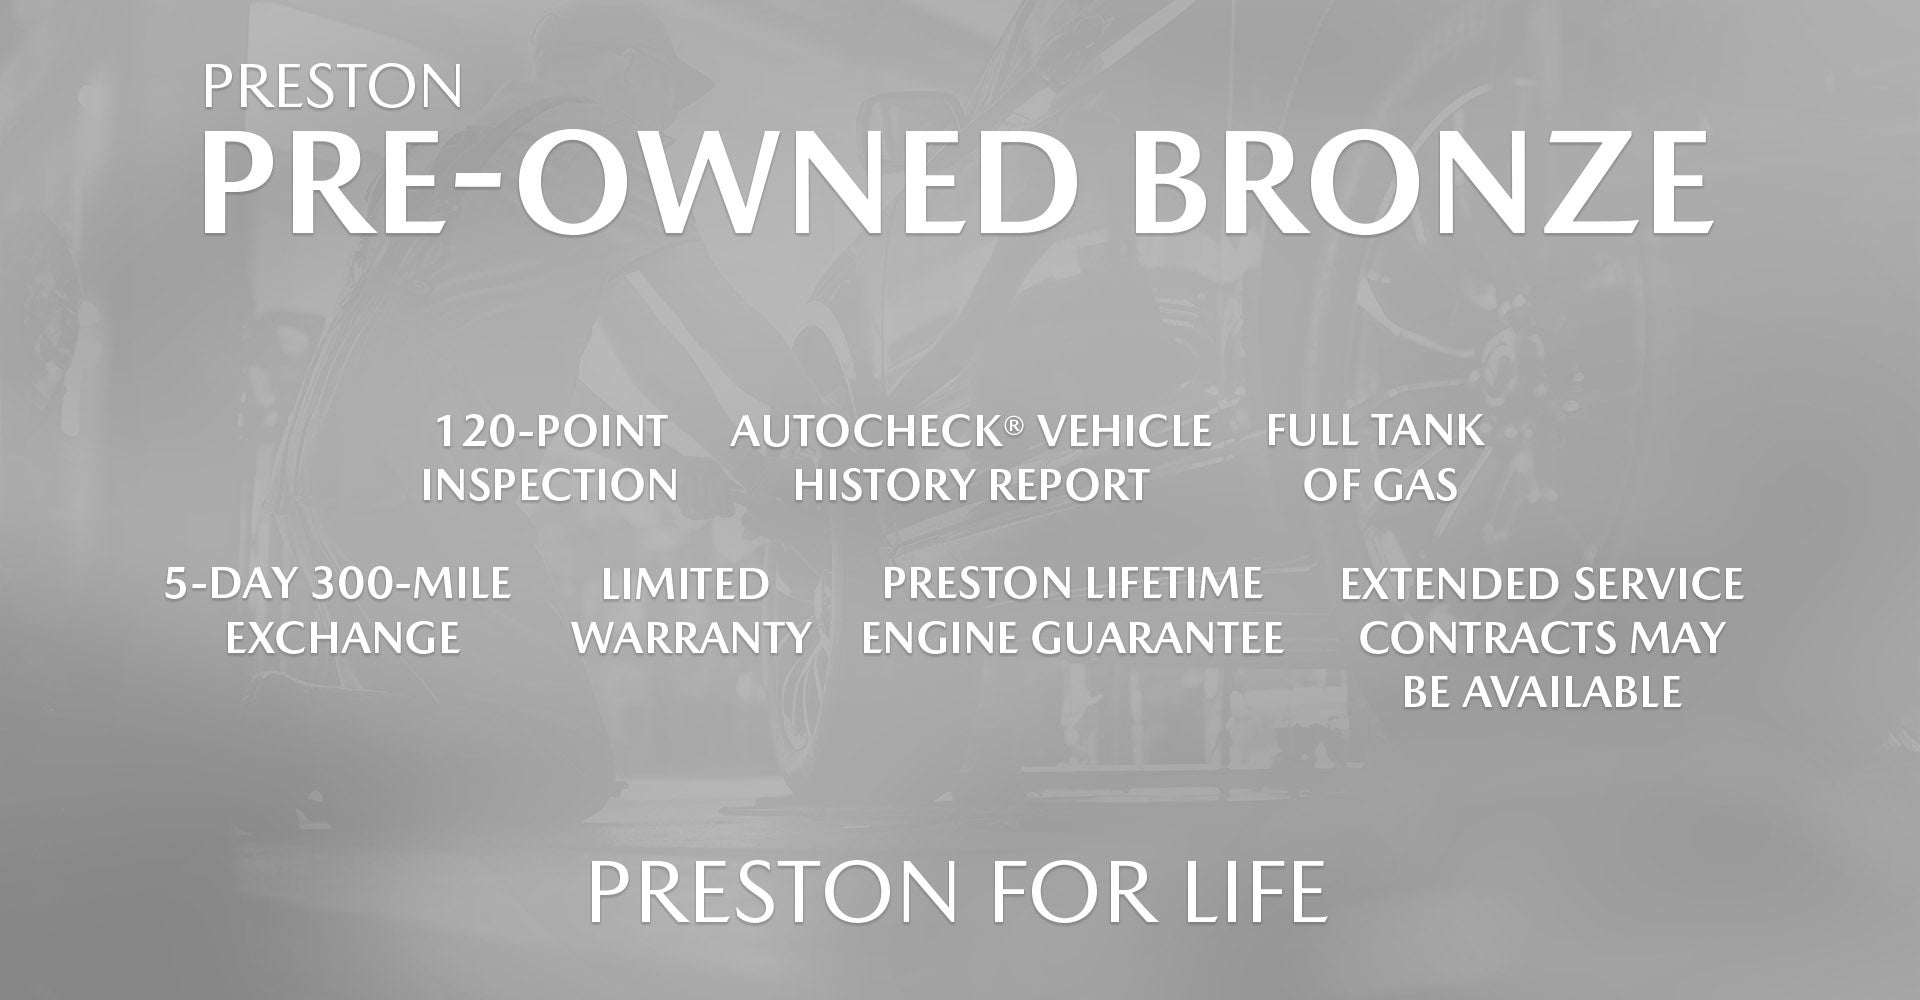 Preston Pre-Owned Bronze